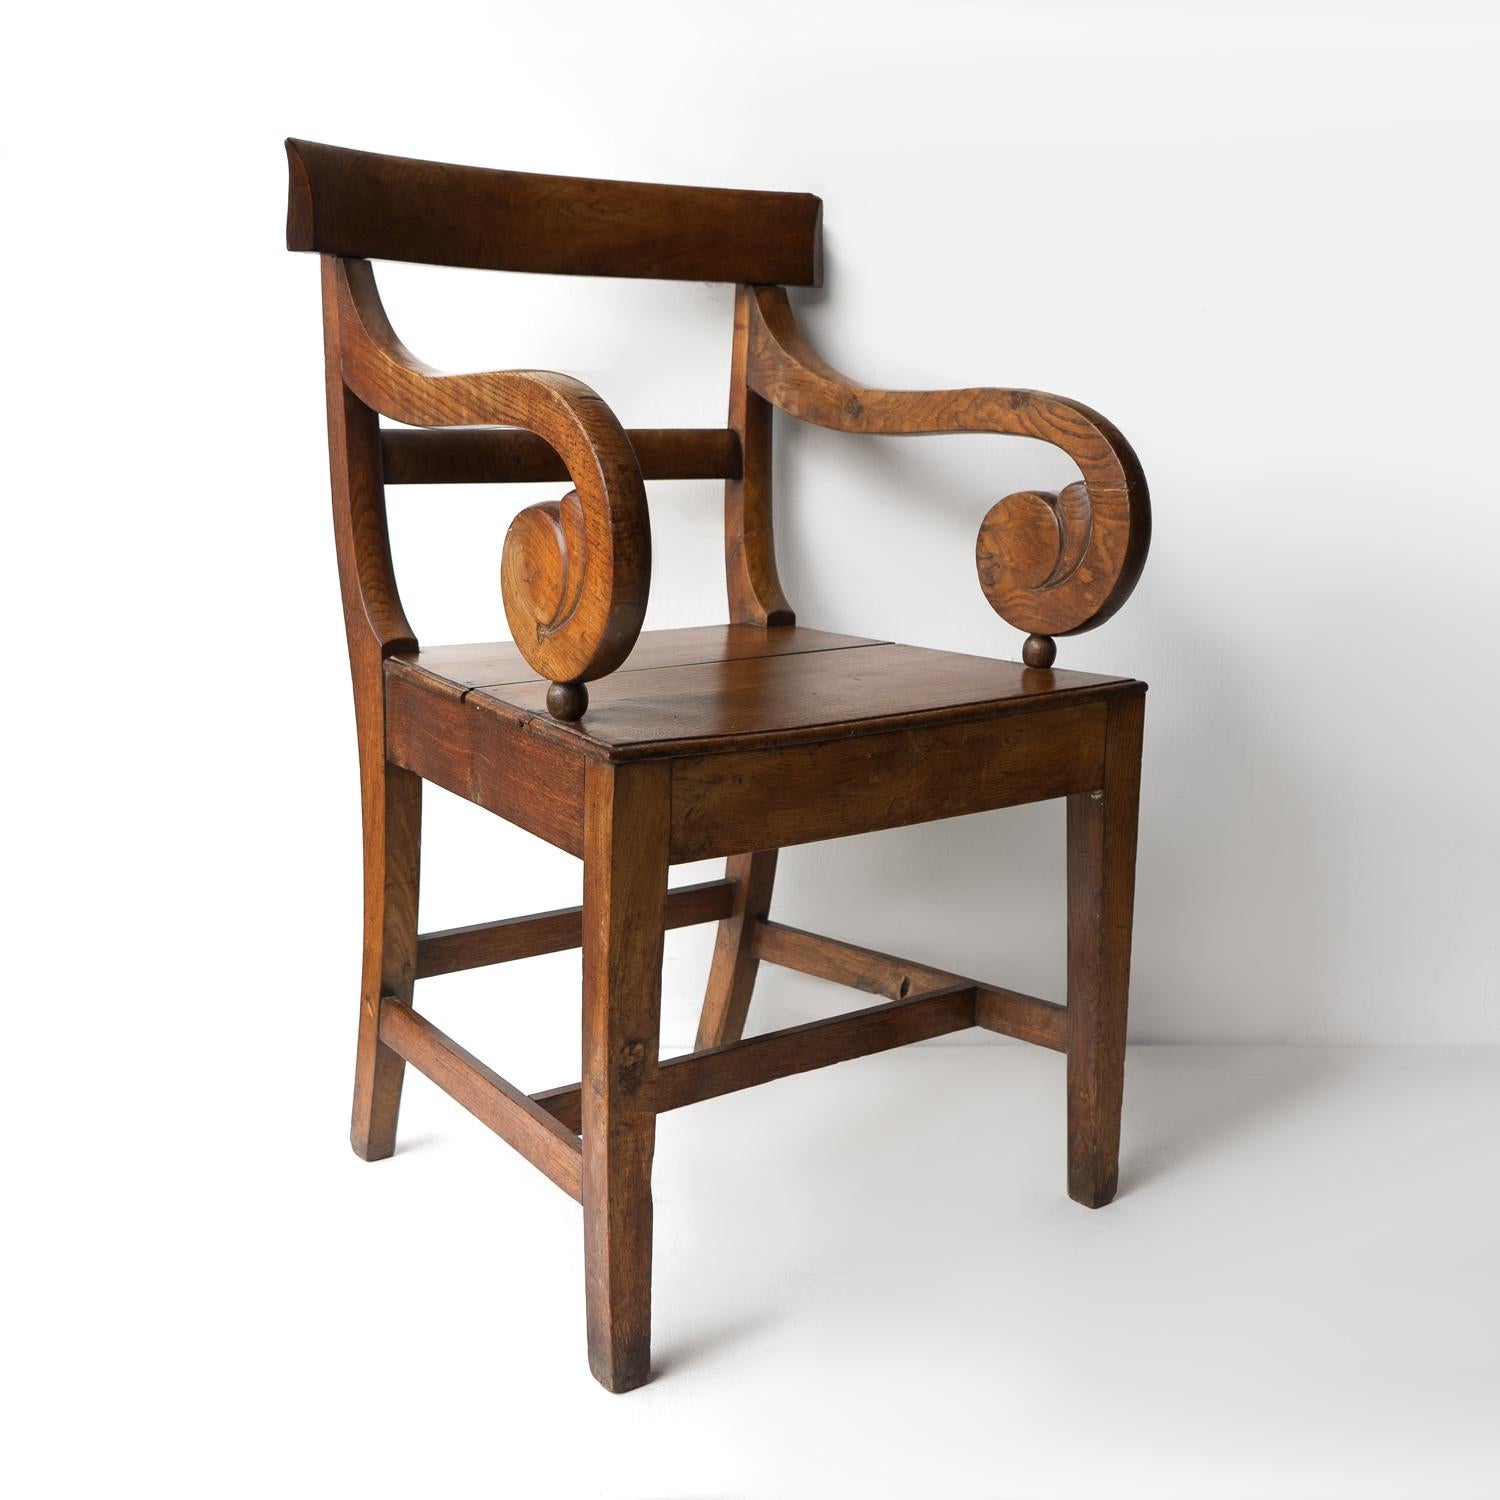 Regency Fauteuil ancien en chêne à volutes de style Régence, chaise coudée du début du 19e siècle